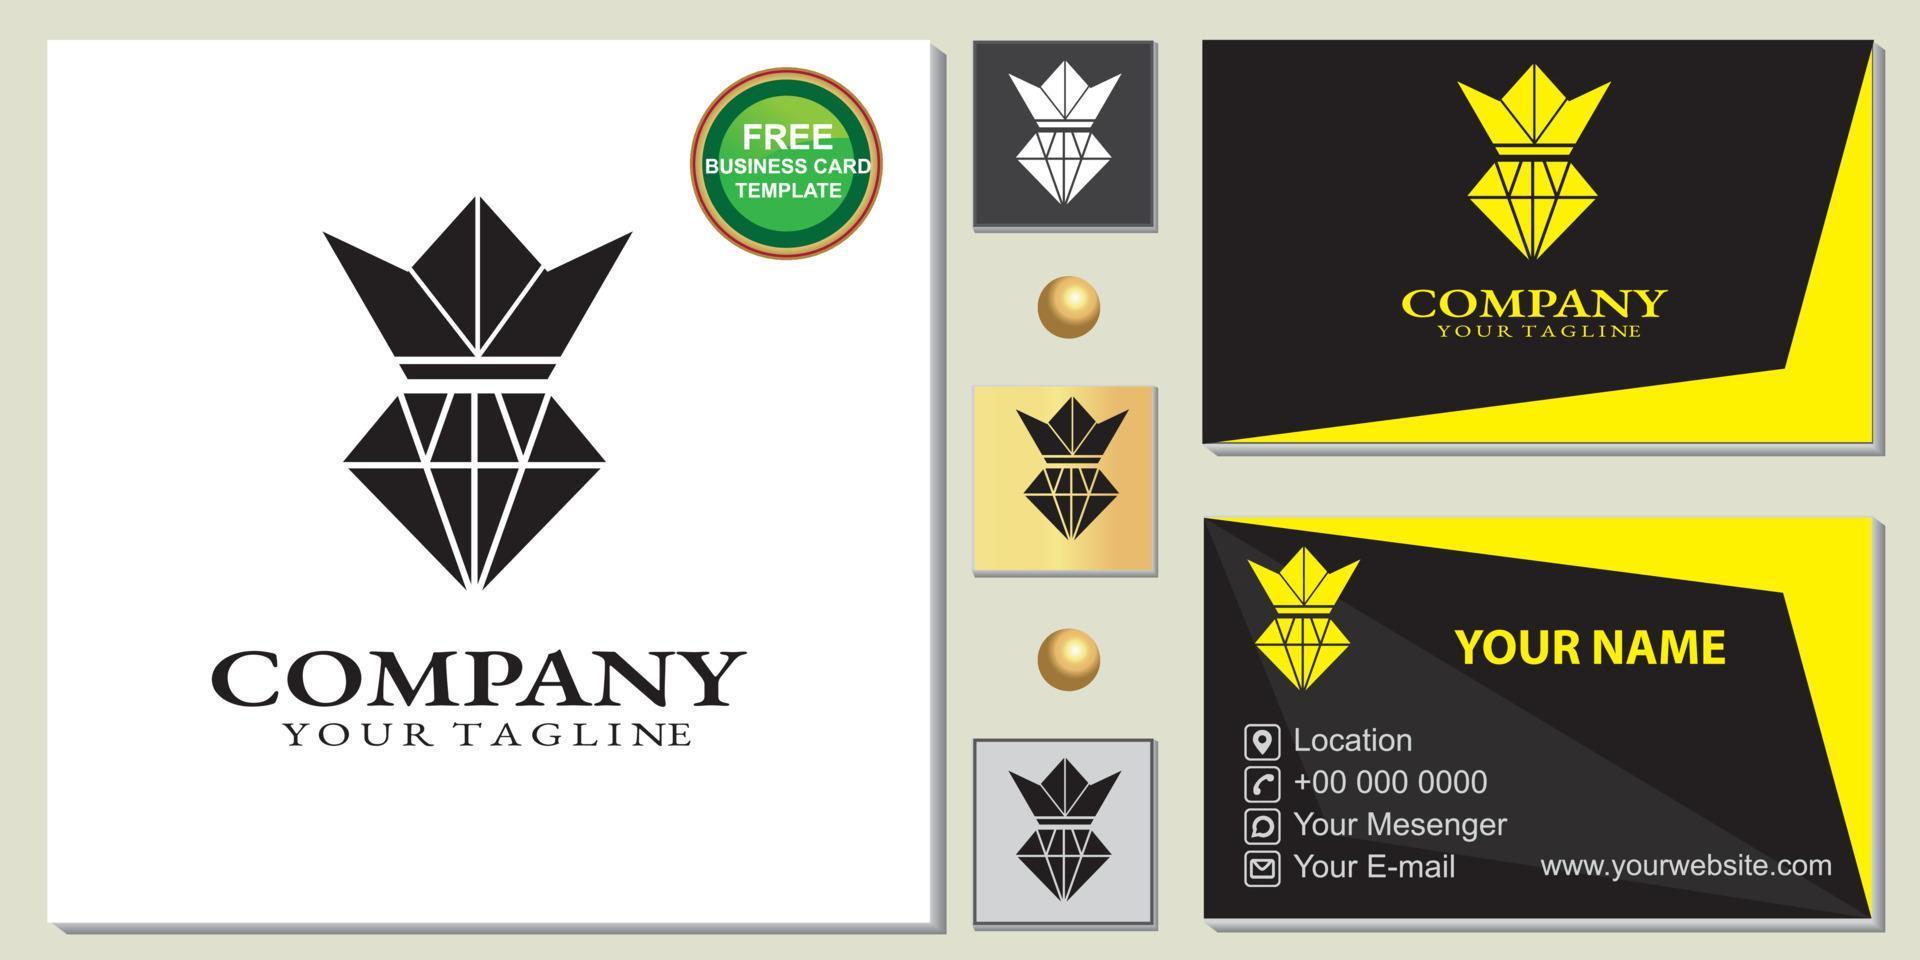 abstraktes König-Diamant-Logo, einfache, kostenlose Premium-Visitenkartenvorlage, Vektor eps 10